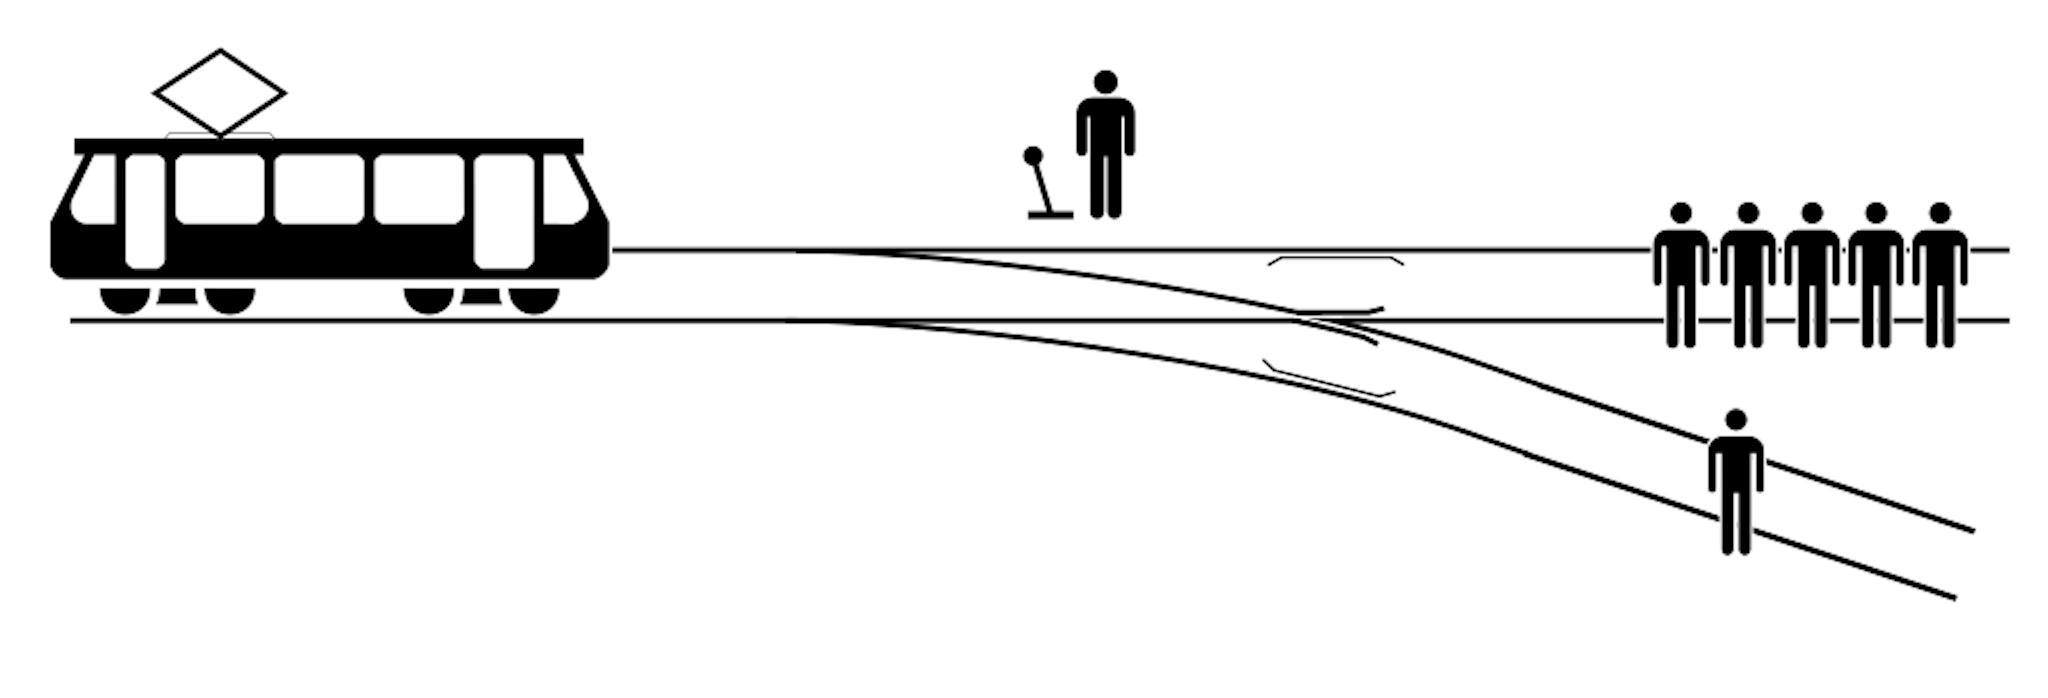 Eine Illustration des Trolley-Problems. Von McGeddon / CC BY-SA 4.0